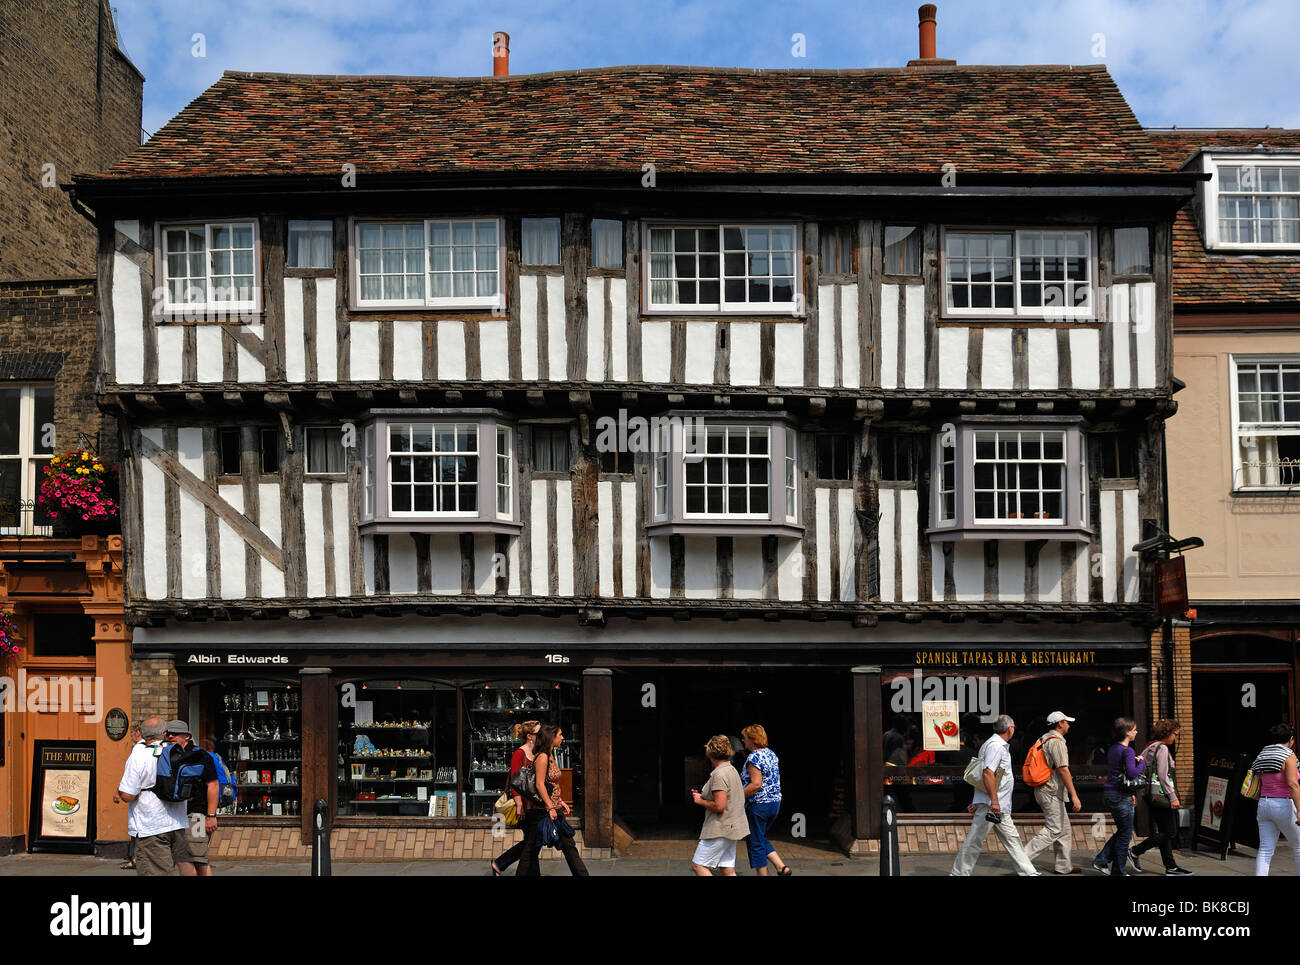 Vieux bâtiment à colombages avec boutiques, Madeleine Street 16a, Cambridge, Cambridgeshire, Angleterre, Royaume-Uni, Europe Banque D'Images